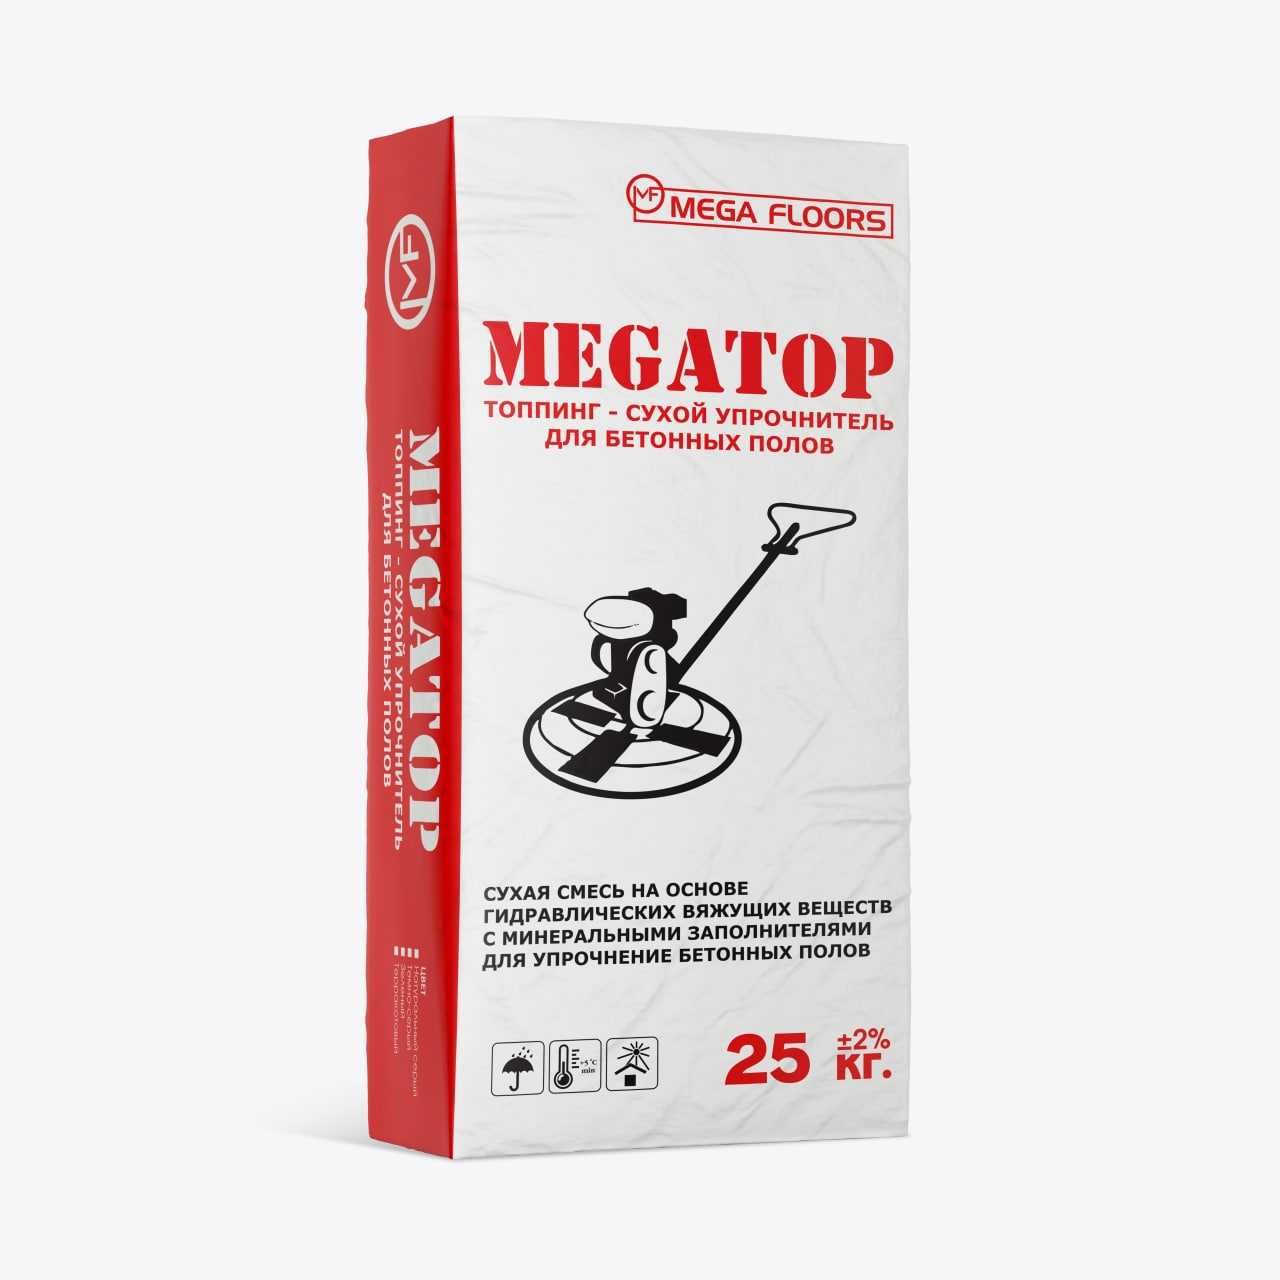 Сухой упрочнитель - Megatop Топпинг - промышленные полы, стяжка